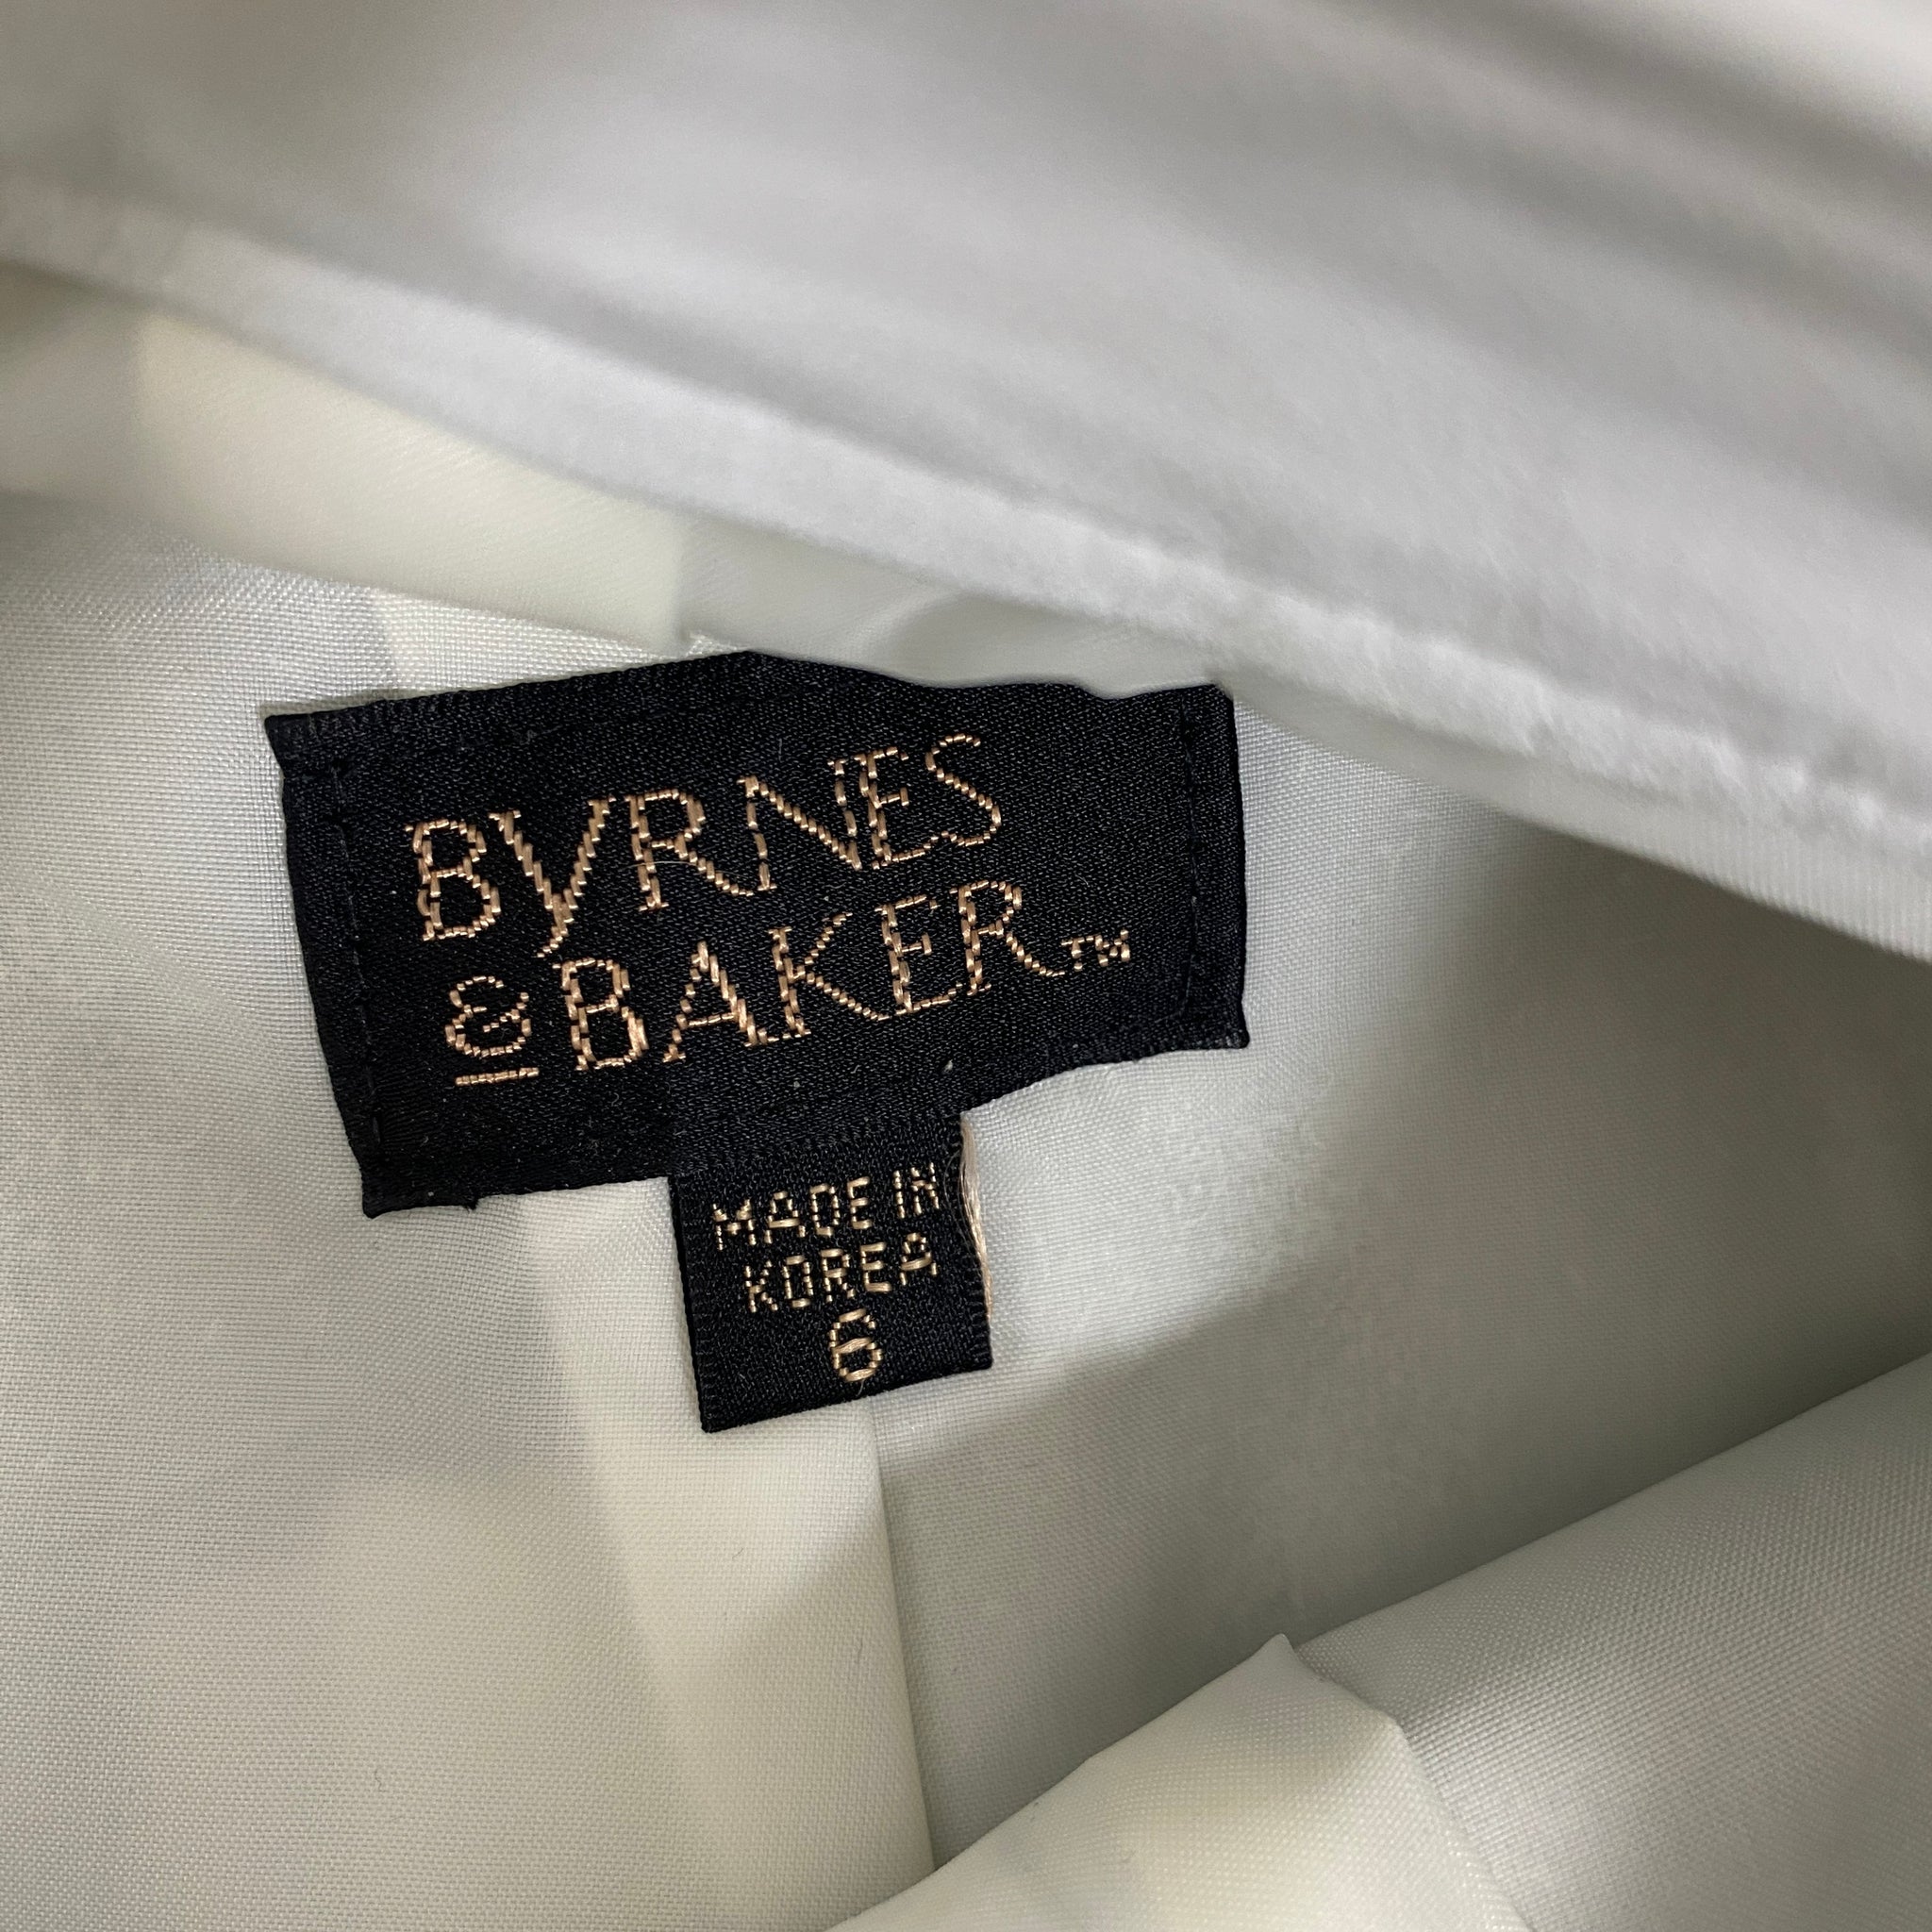 Bynes and Baker Micro Mini White Leather Skirt Skirt - XXS